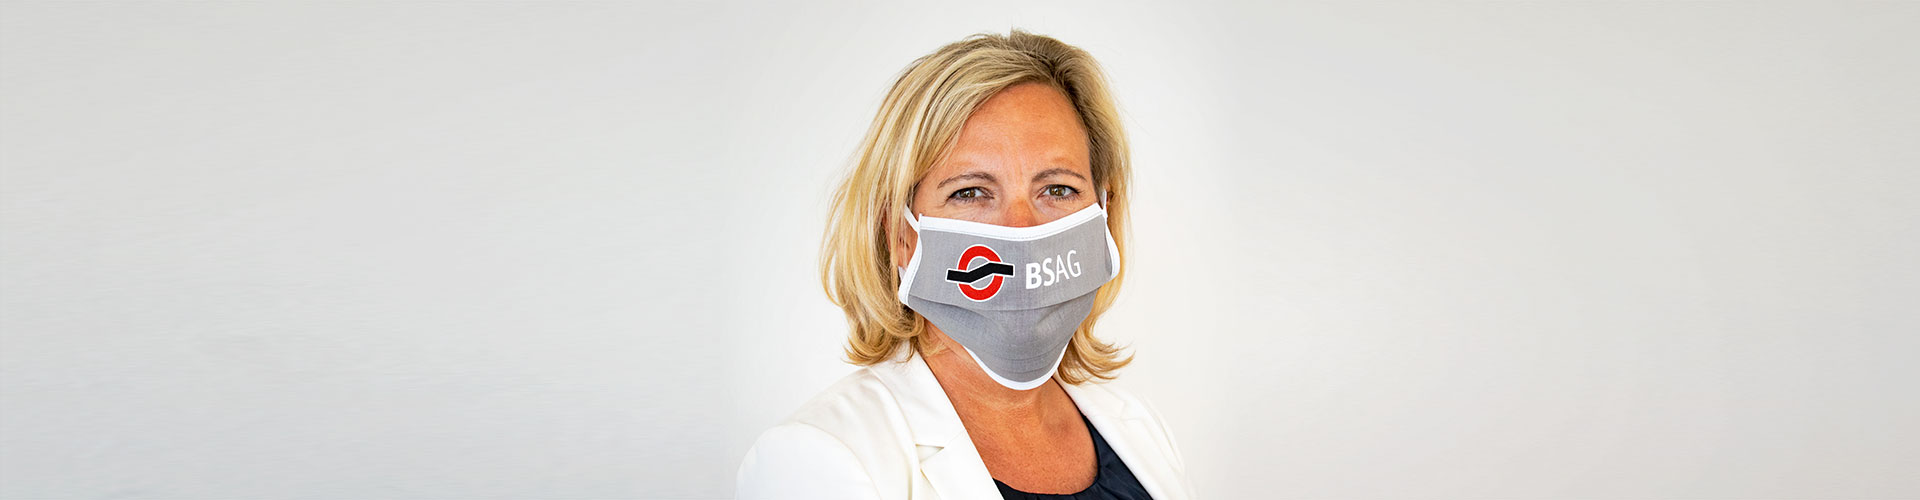 Eine Frau mit einer grauen Mund-Nasen-Bedeckung mit BSAG-Logo.